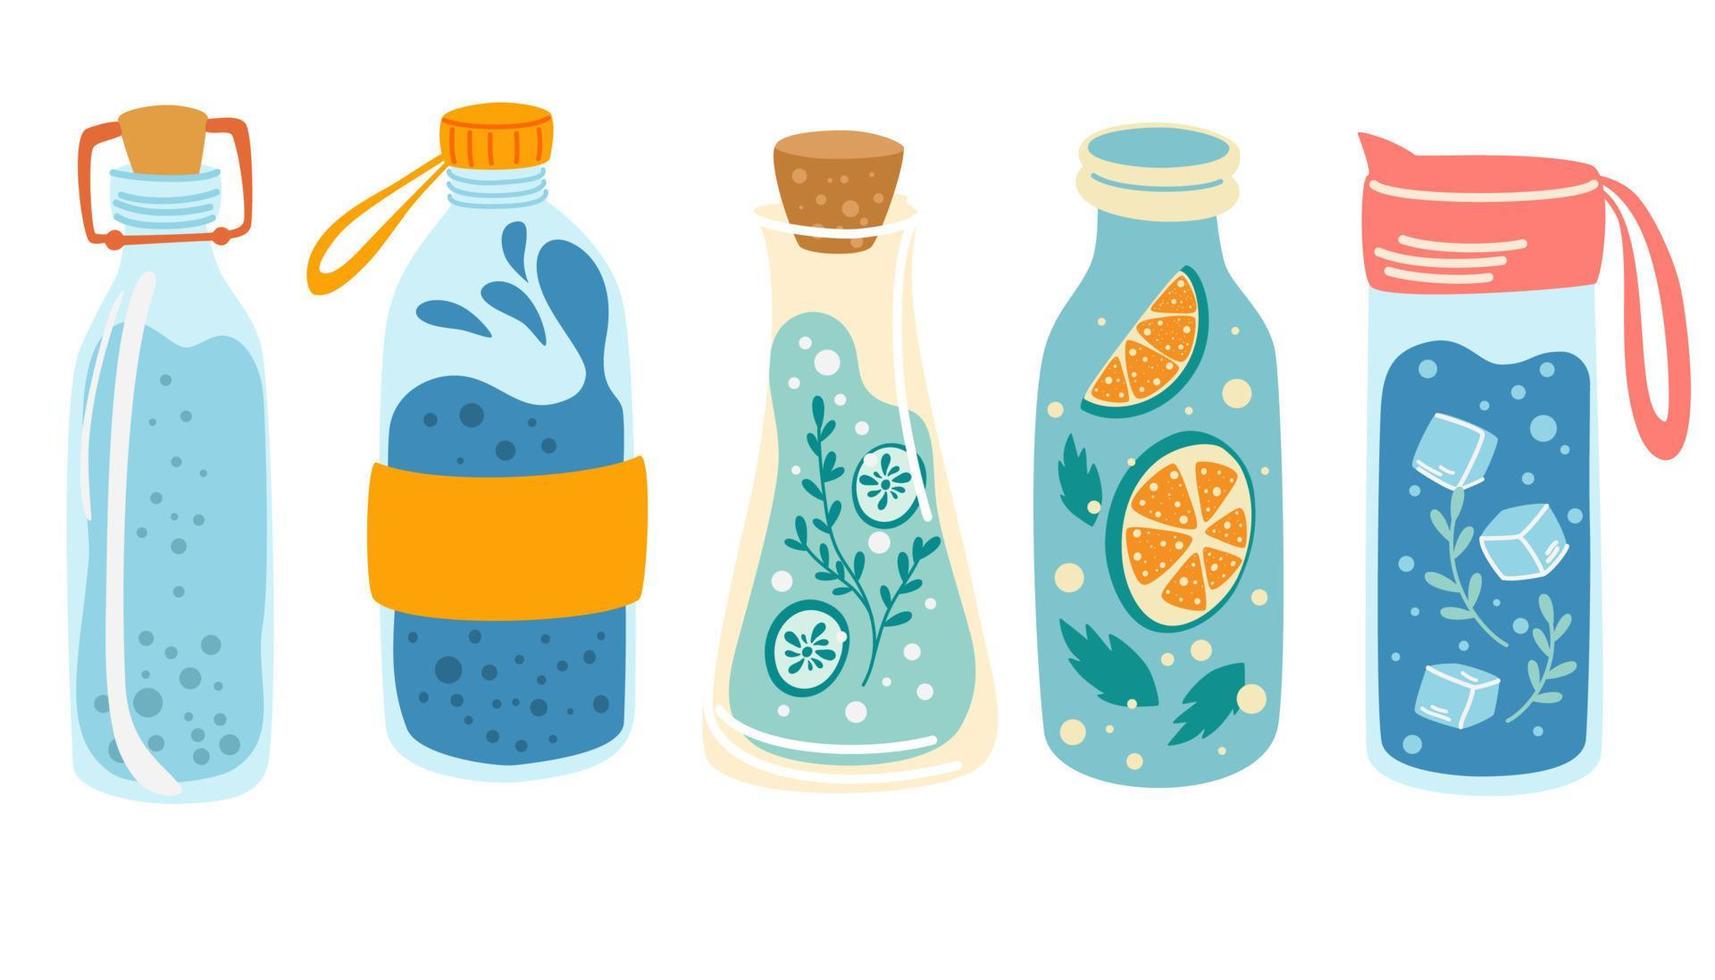 waterflessen set. concept detox drankje, drinkwater in een thermoskan, glazen fles. ijswater. verfrissend zomerdrankje. gezonde levensstijl dagelijkse gewoonten, wellness, ochtendrituelen. vector illustratie